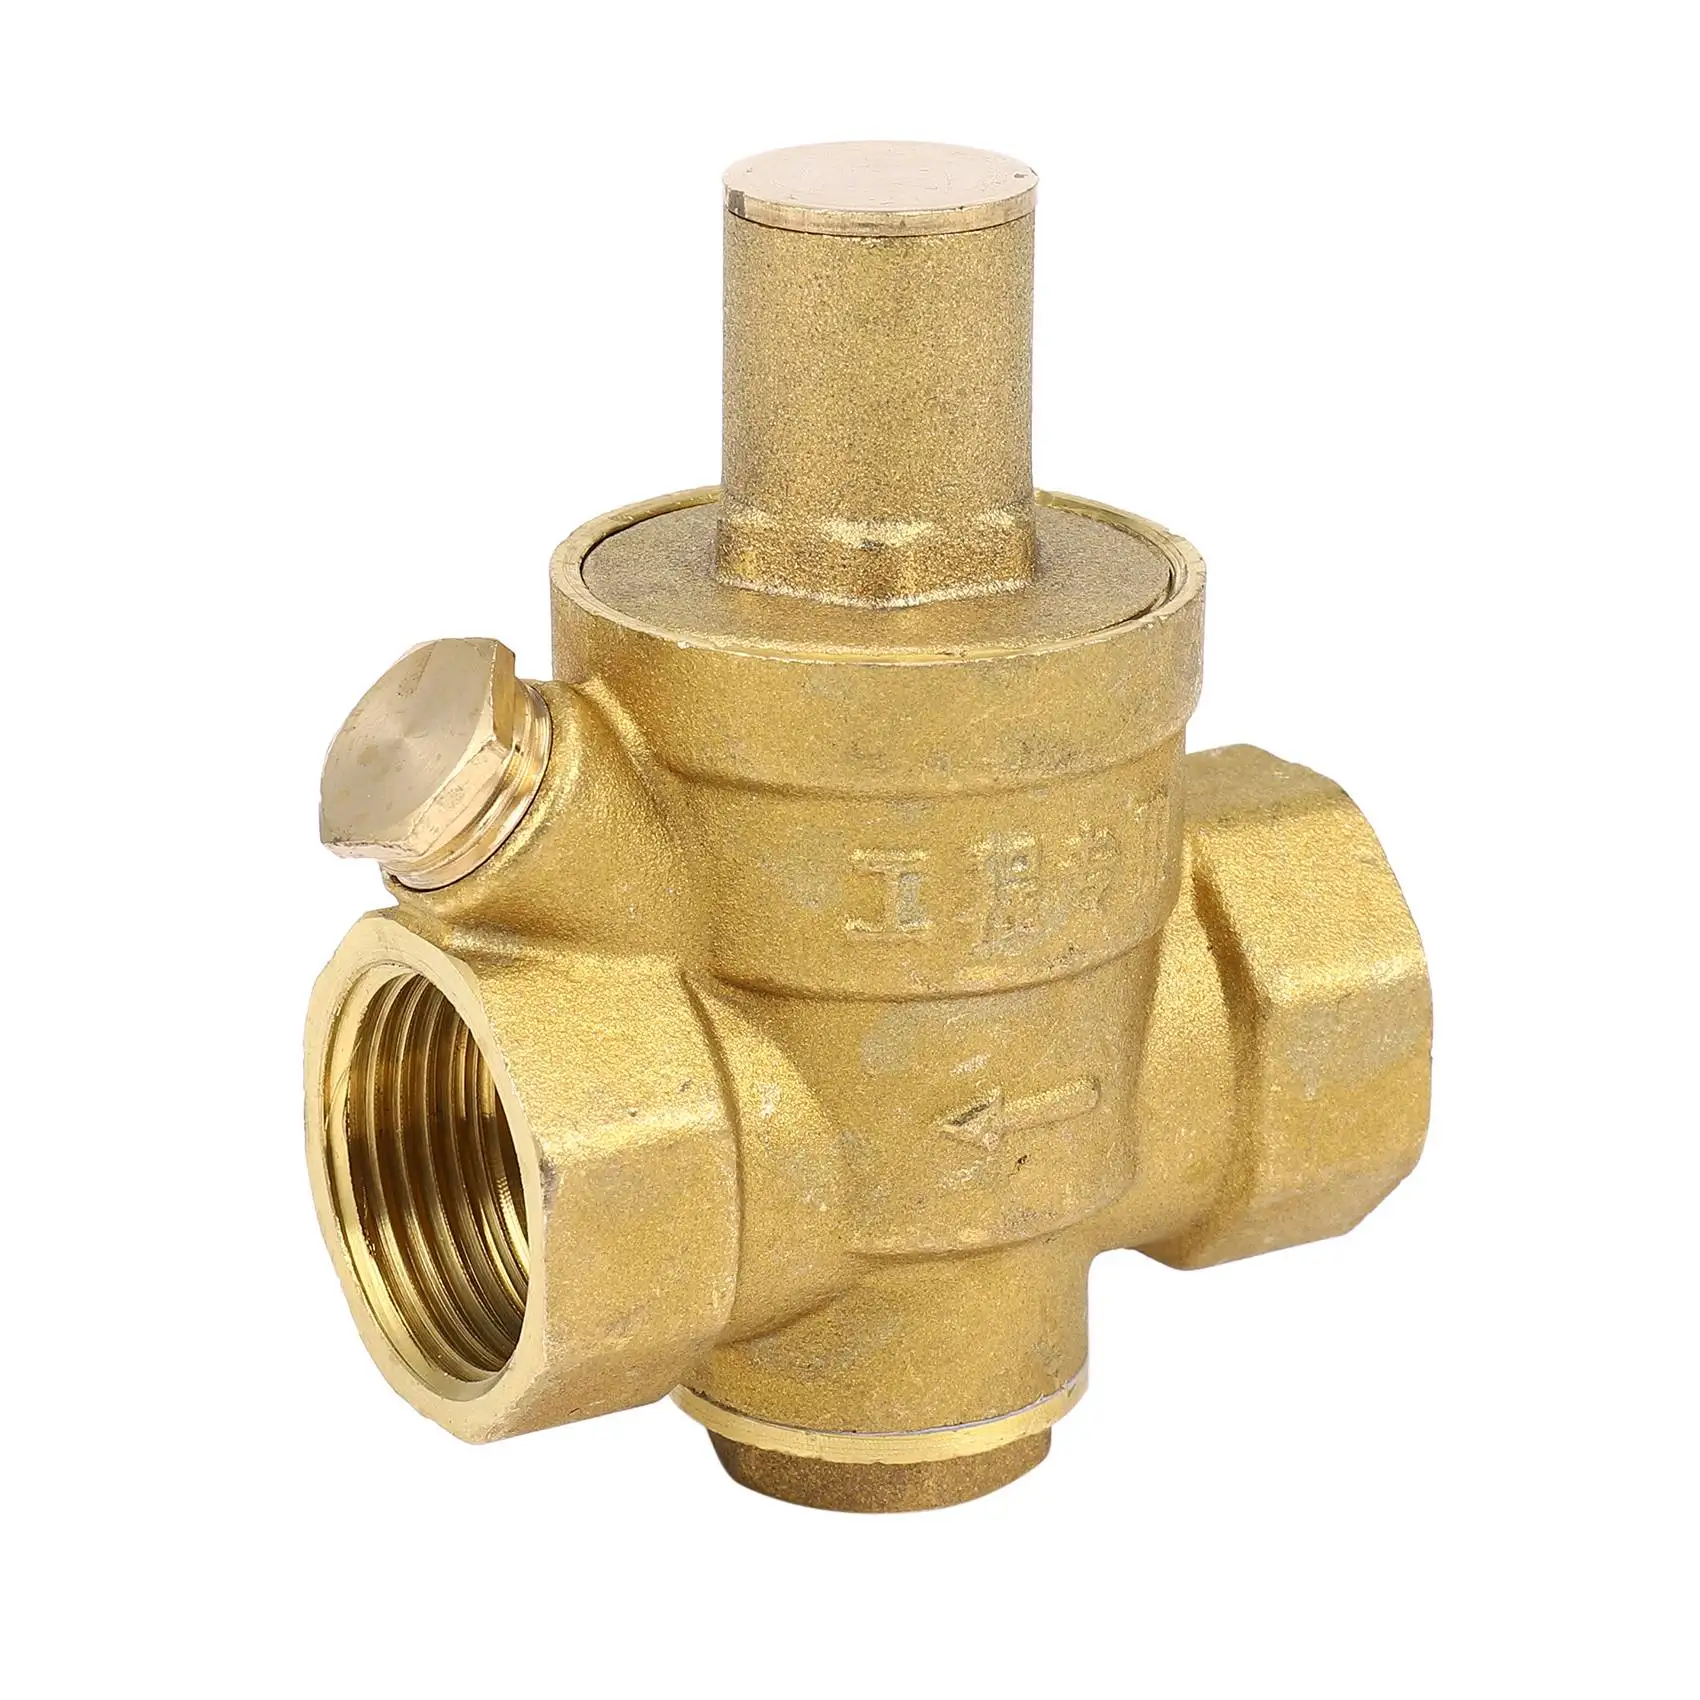 

Регулируемый регулятор давления воды Dn20 3/4 дюйма, редукционный клапан МПа, редукционный клапан давления воды